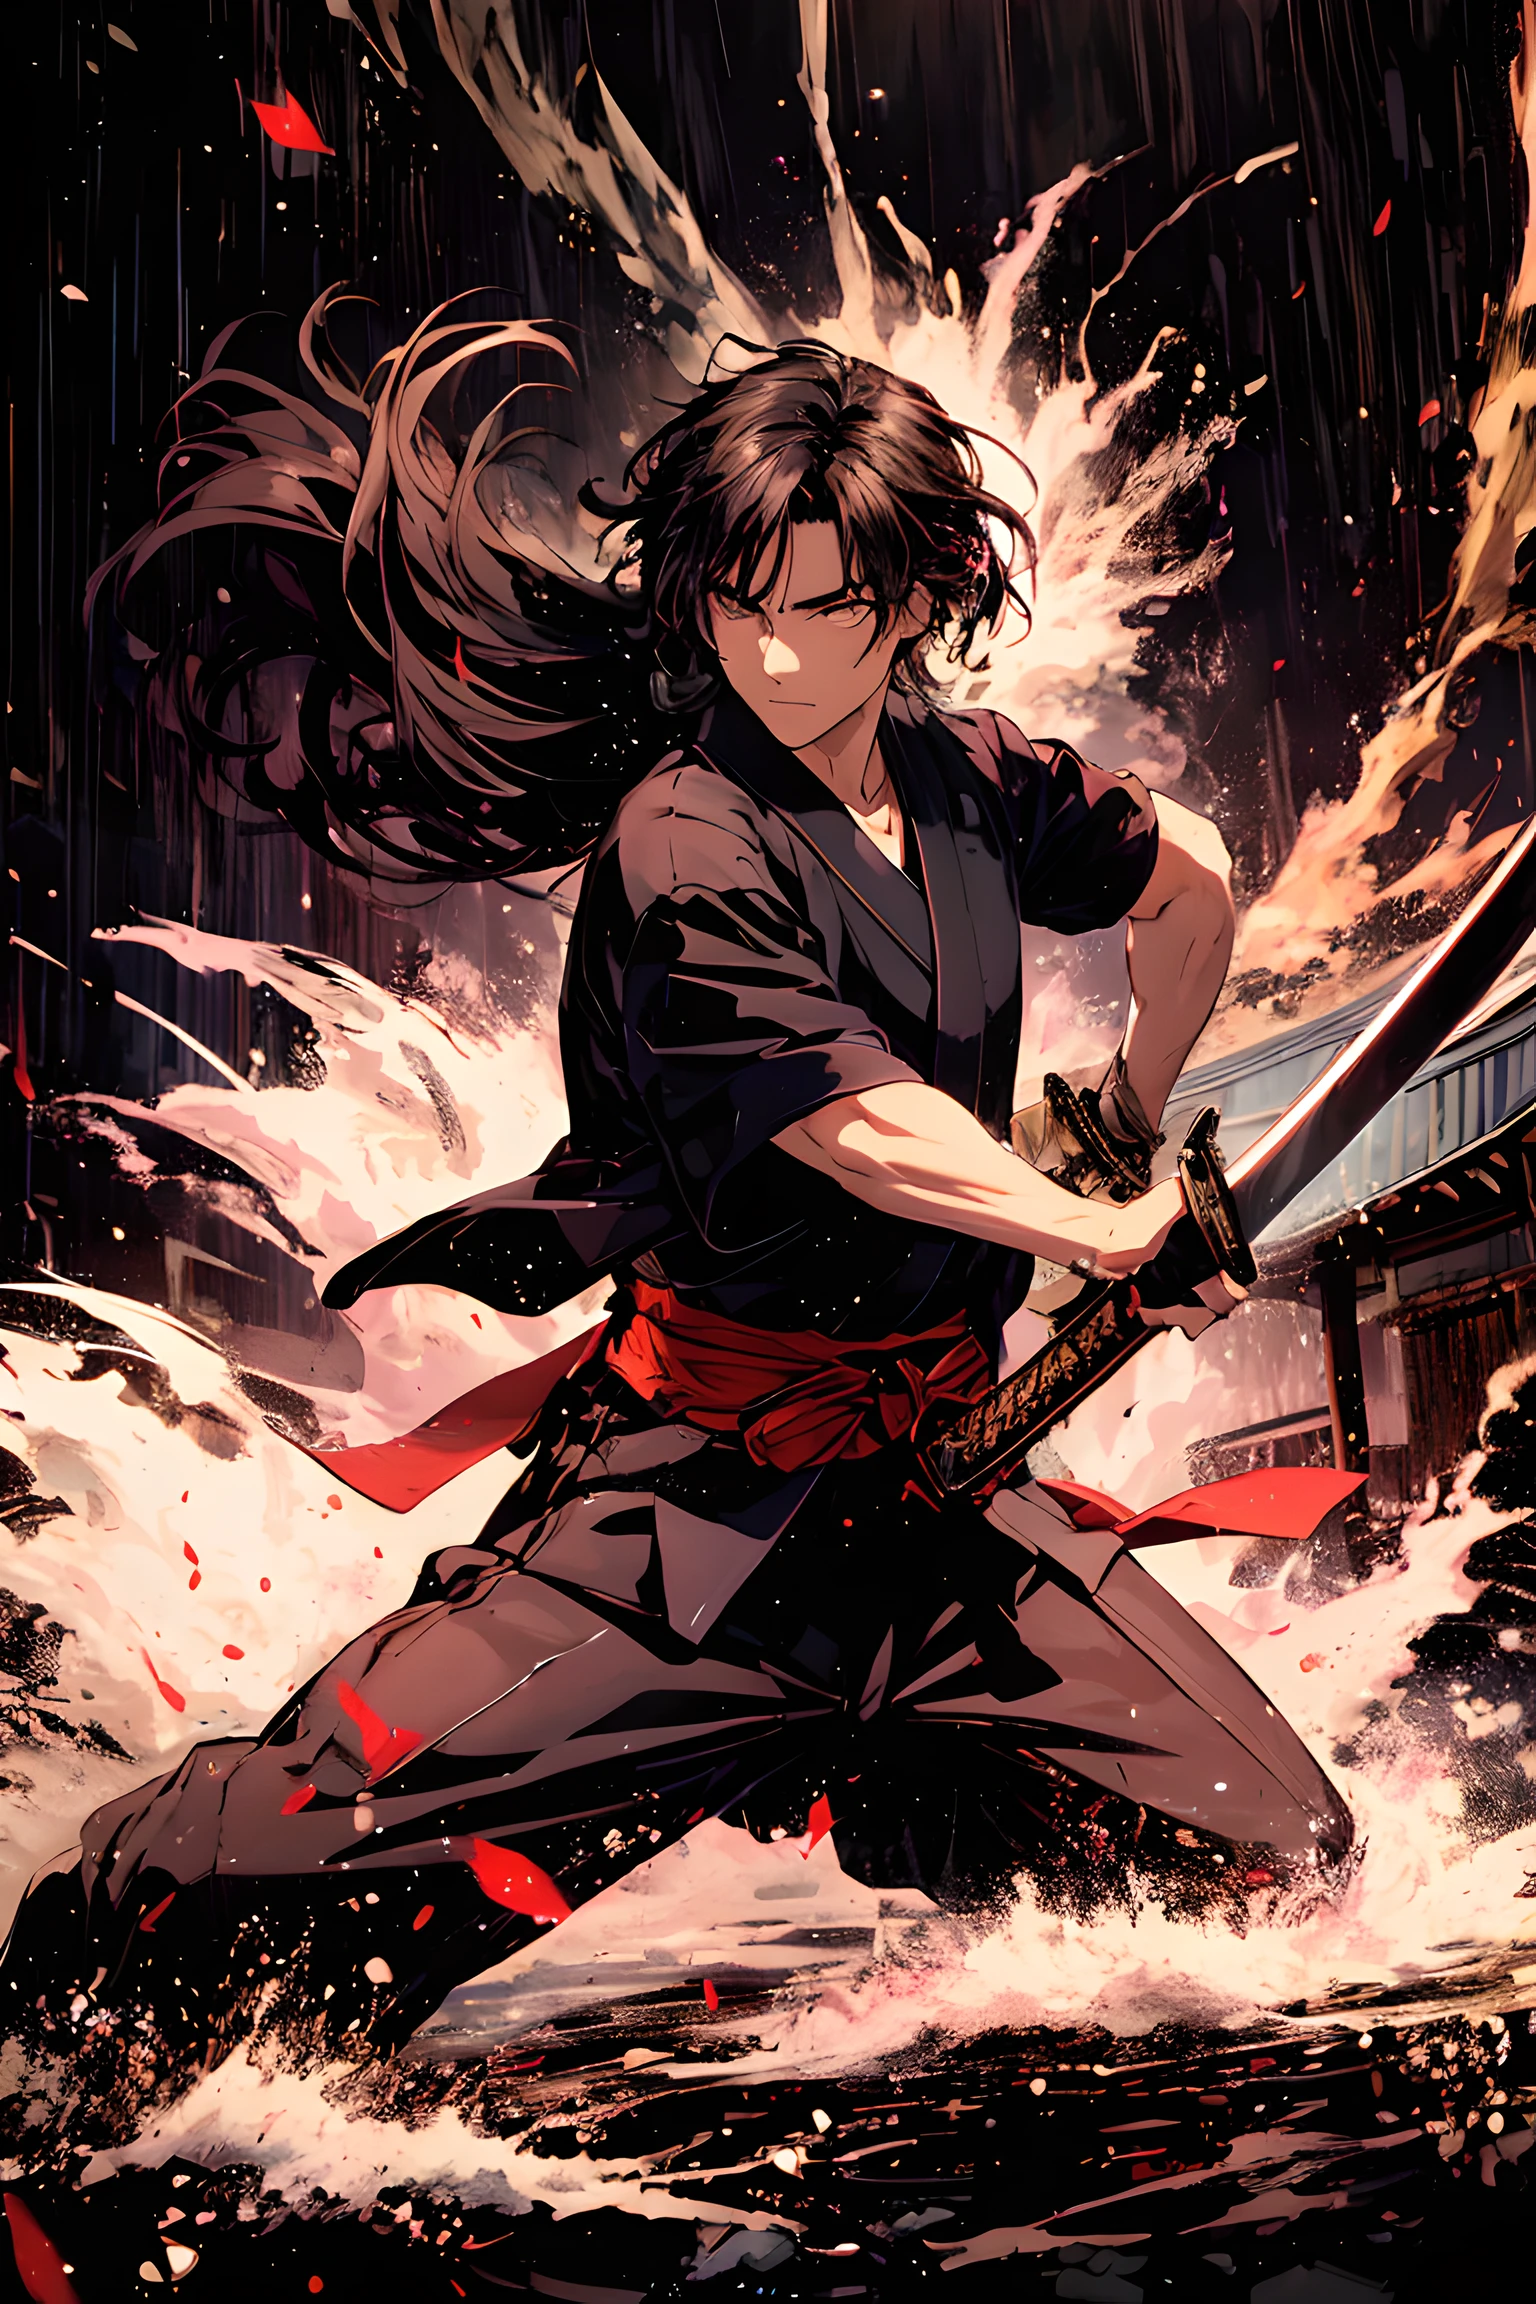 Toshiro Mufune, Toshiro Mifune, samurai japonés, 55 años, Parte superior del cuerpo, dinámica, postura de lucha, sosteniendo la espada katana, campo de hierba, lluvia, Temple, templo japonés, trueno, nube negra, tema negro, fondo de tema oscuro, 
BREAK,
Primer plano de la cara, escena de pelea, mirando al espectador, (escena de duelo:1.5), (sosteniendo una espada:1.5), (tratando de mantener el ritmo:1.5), (Justo antes de ser atacado:1.5), dinámica angle, escena de pelicula, 
BREAK,
vistiendo ropa japonesa negra, perro negro, hakama negro, ropa detallada,